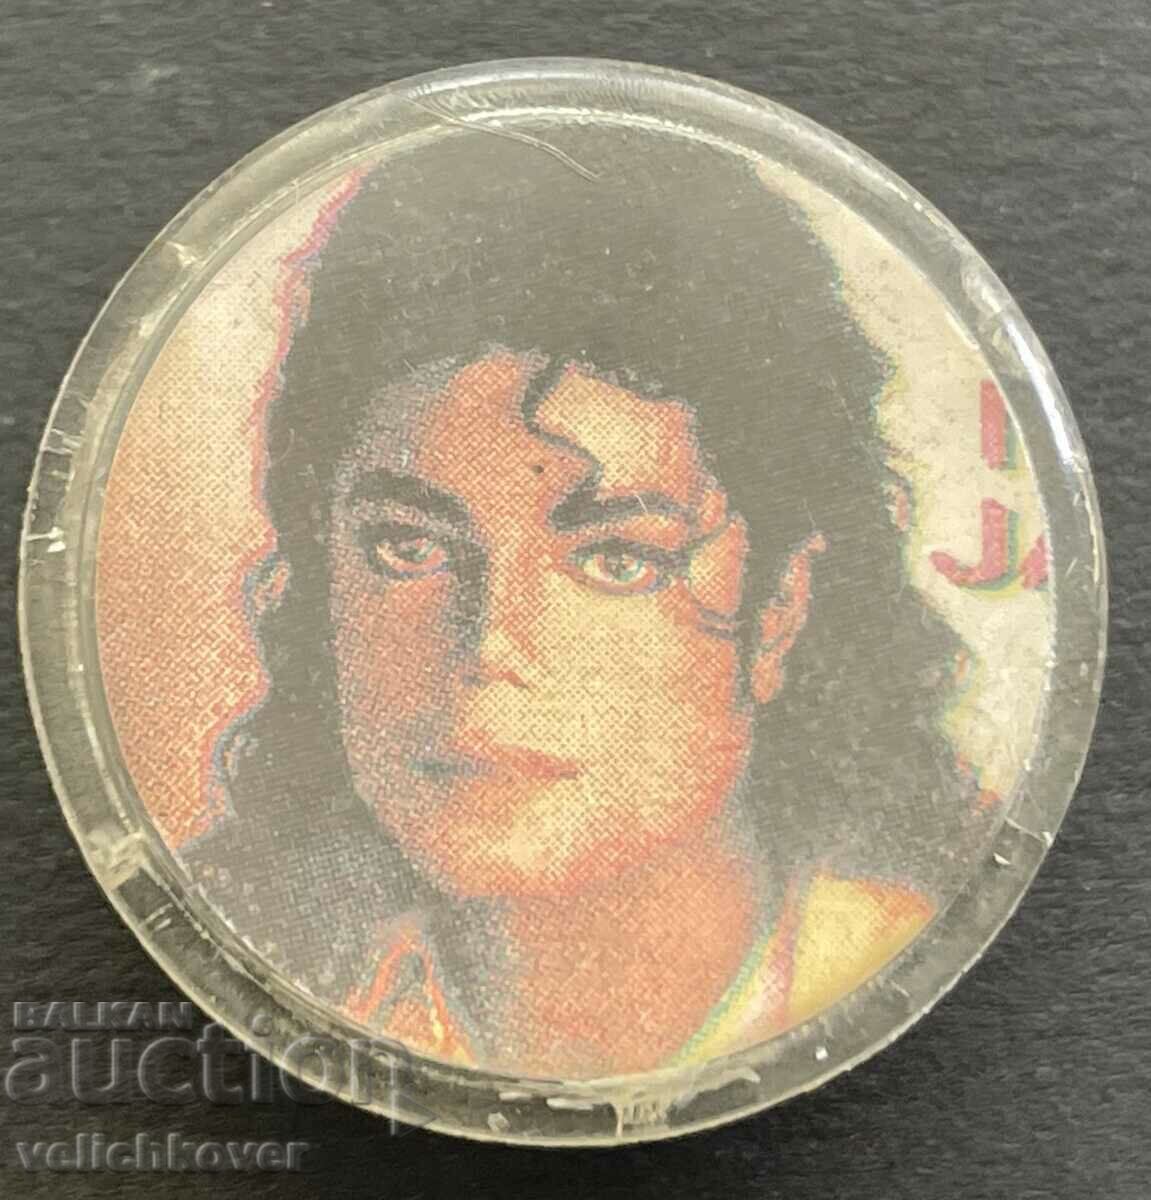 37637 Βουλγαρία επιγραφή με την εικόνα του Michael Jackson 80s.